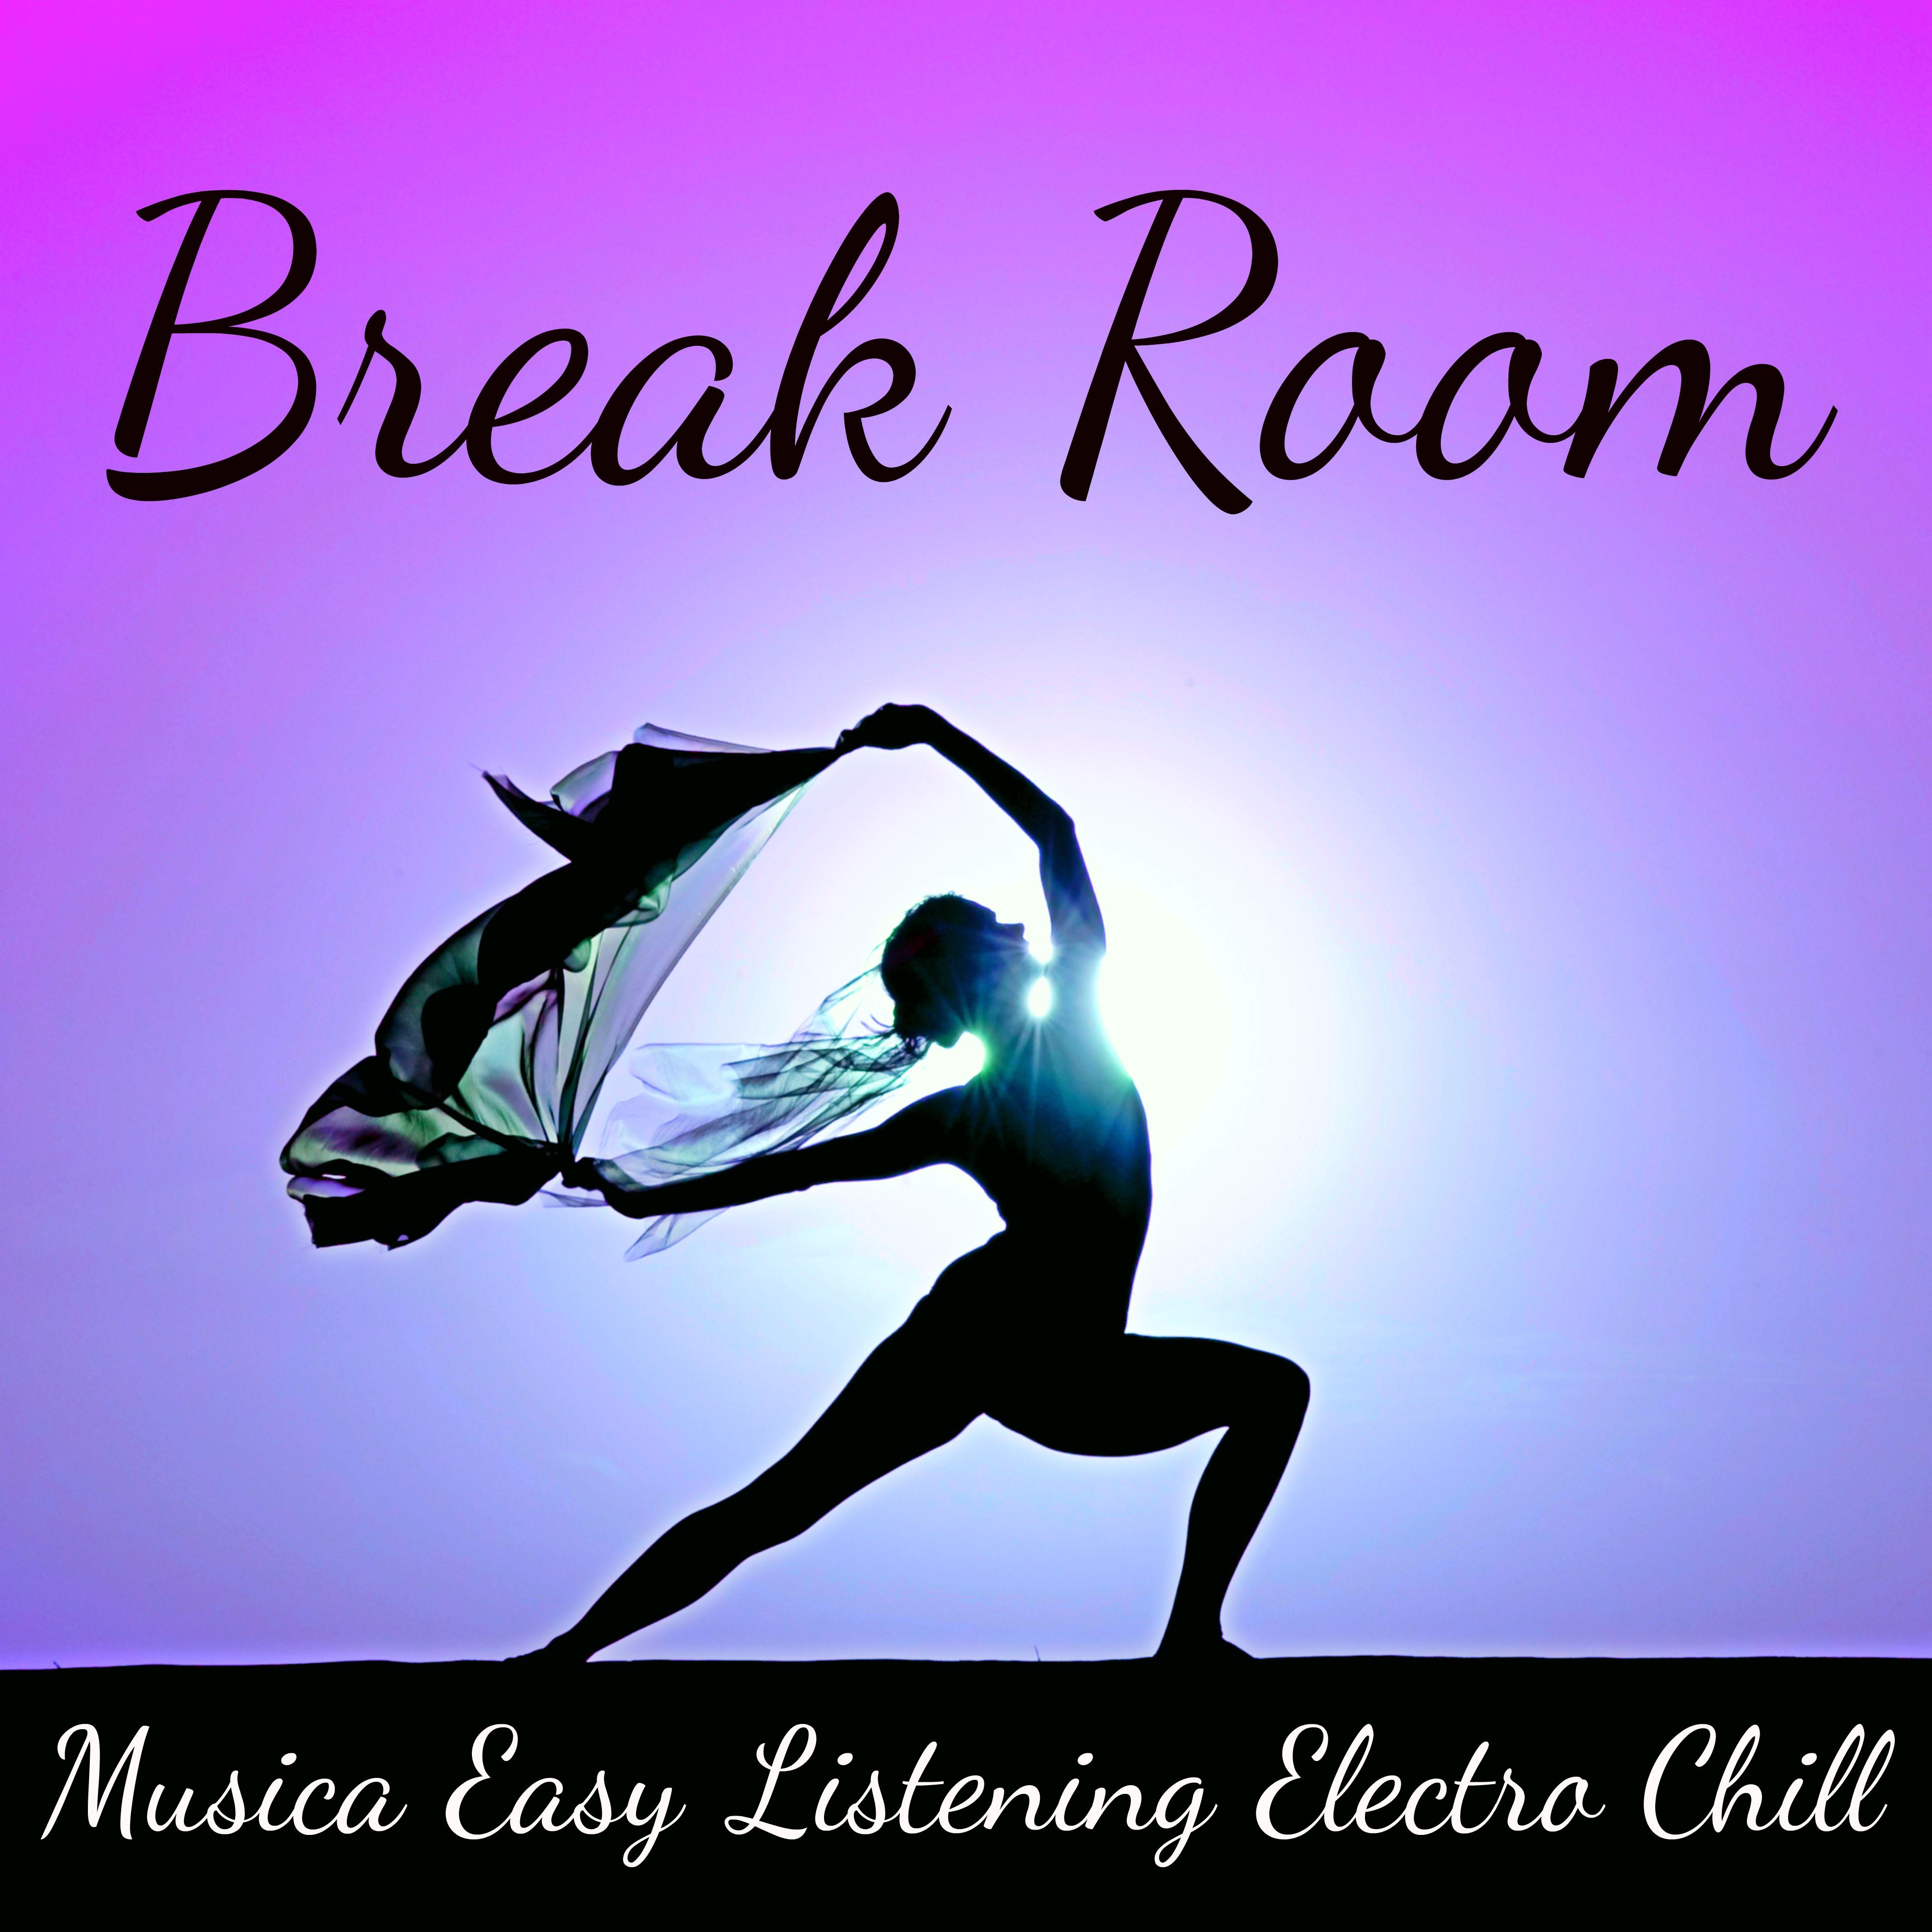 Break Room - Musica Easy Listening Electro Chill para Cura Emocional Ejercicios de Yoga y Spa Tratamiento